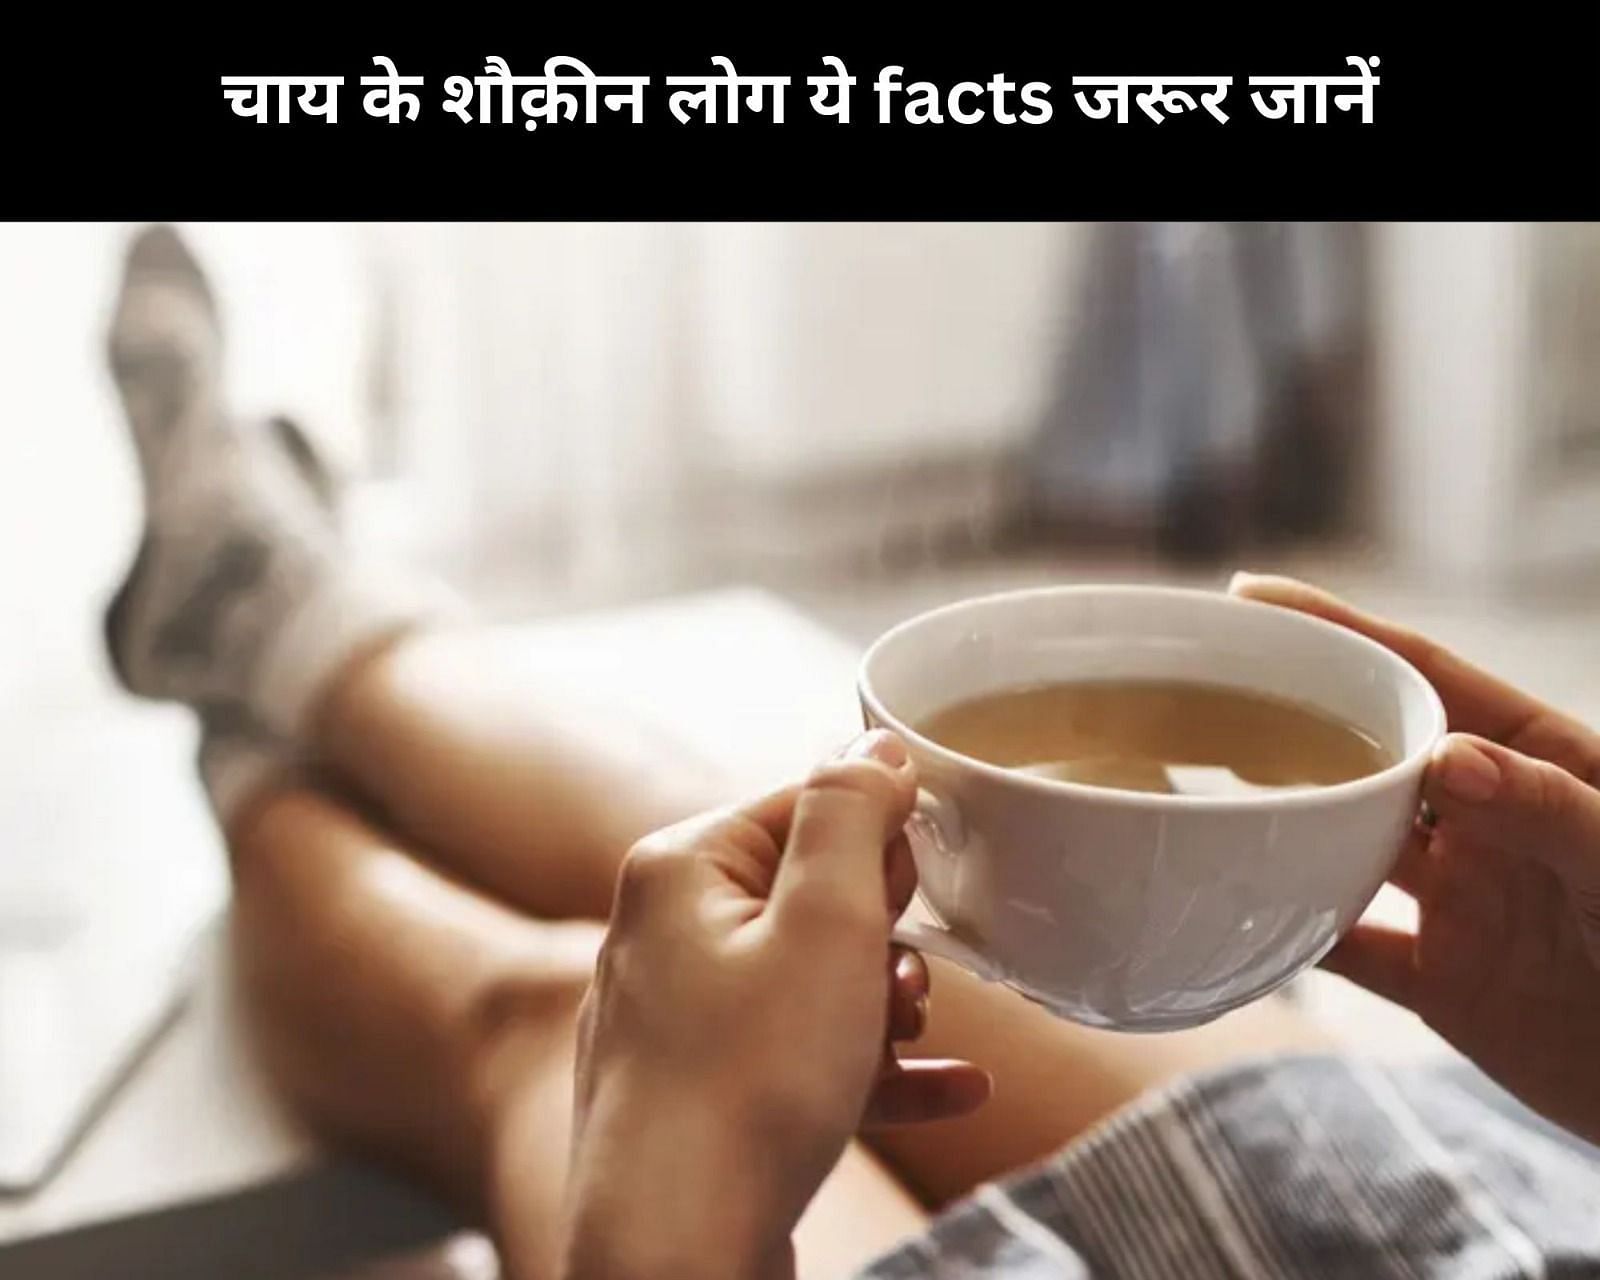 चाय के शौक़ीन लोग ये facts जरूर जानें (फोटो - sportskeedaहिन्दी)